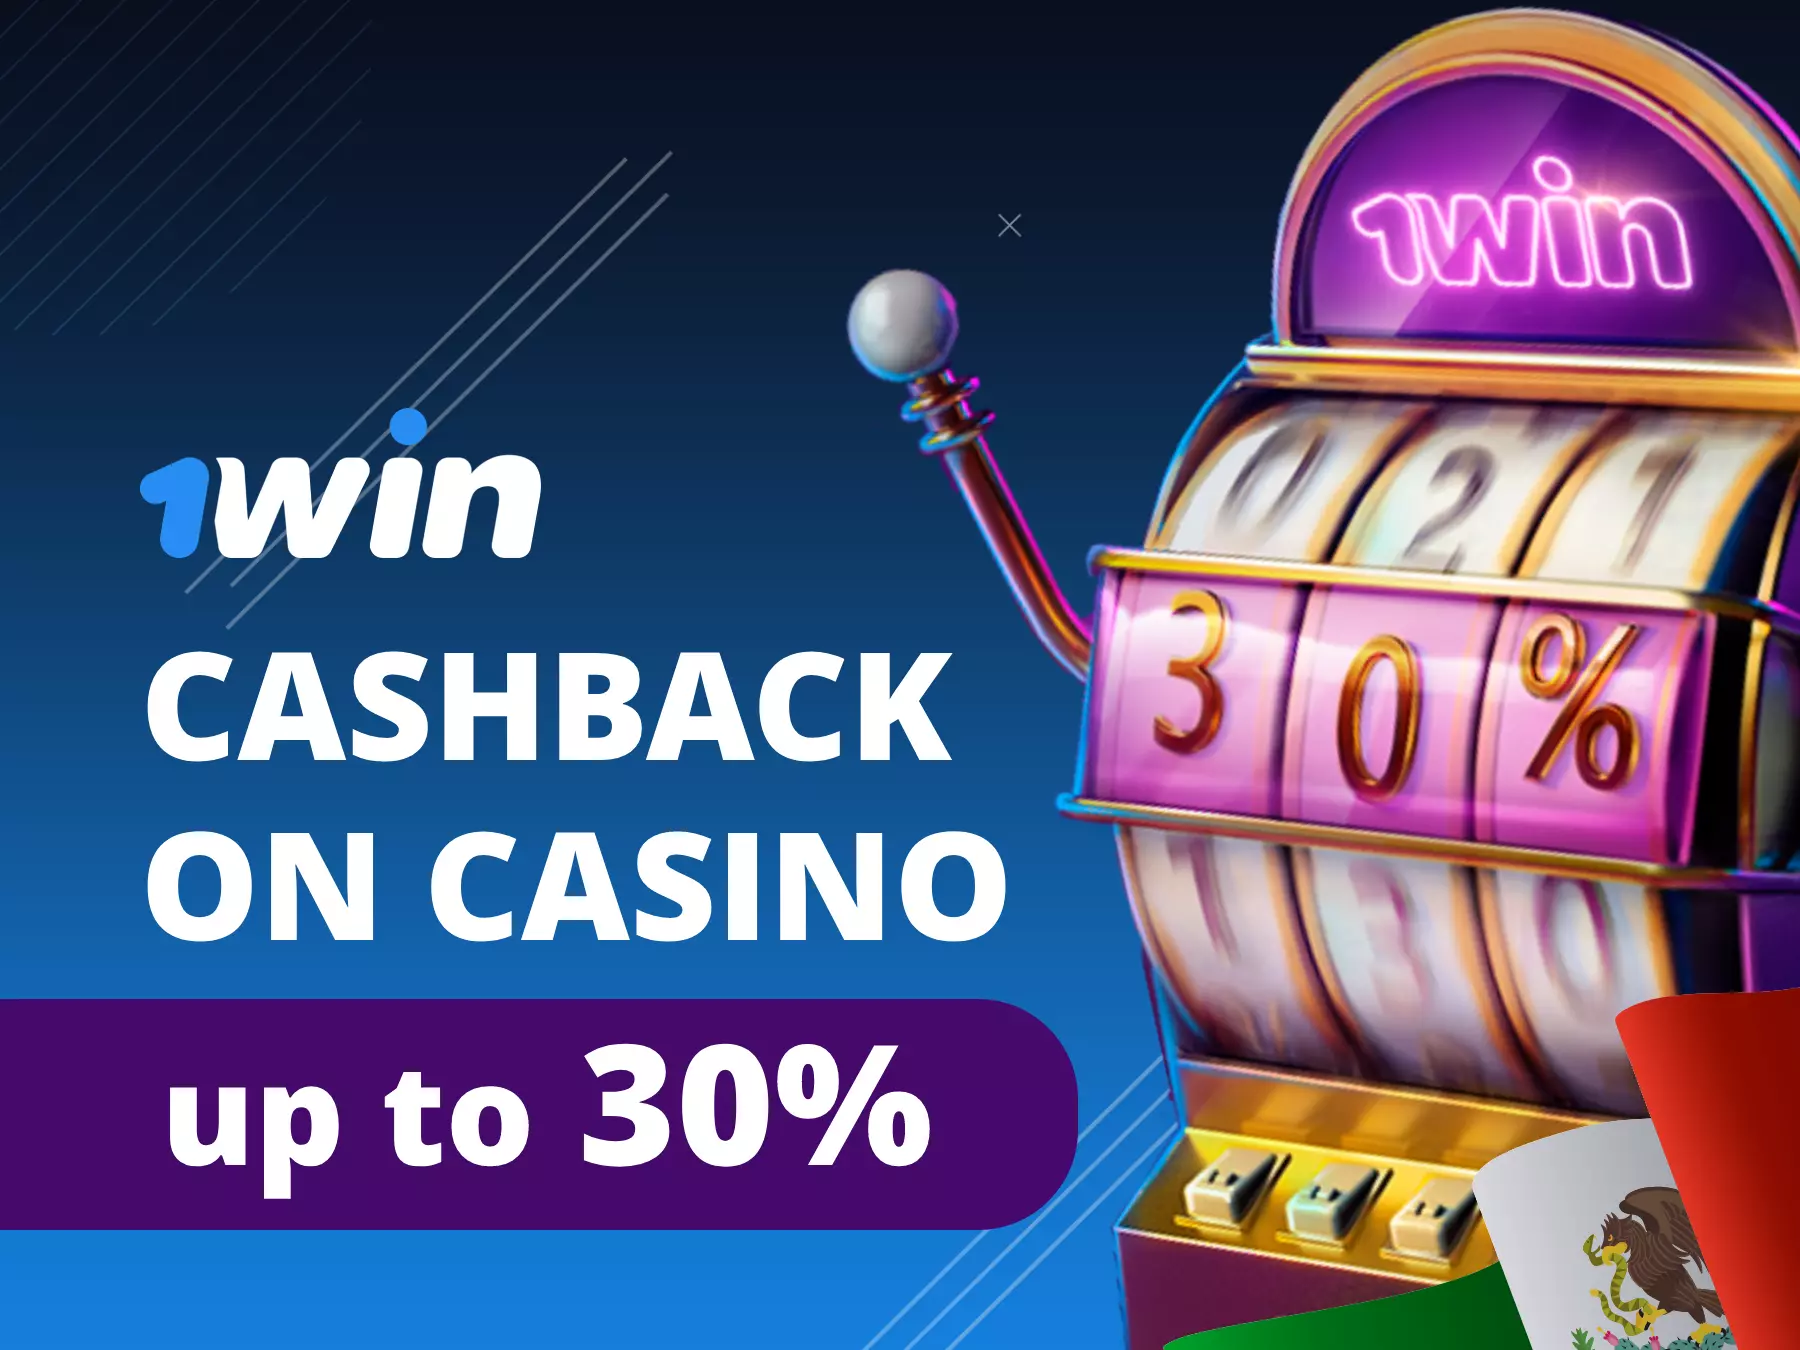 cashback en casino hasta 30% en sitio de apuestas 1win